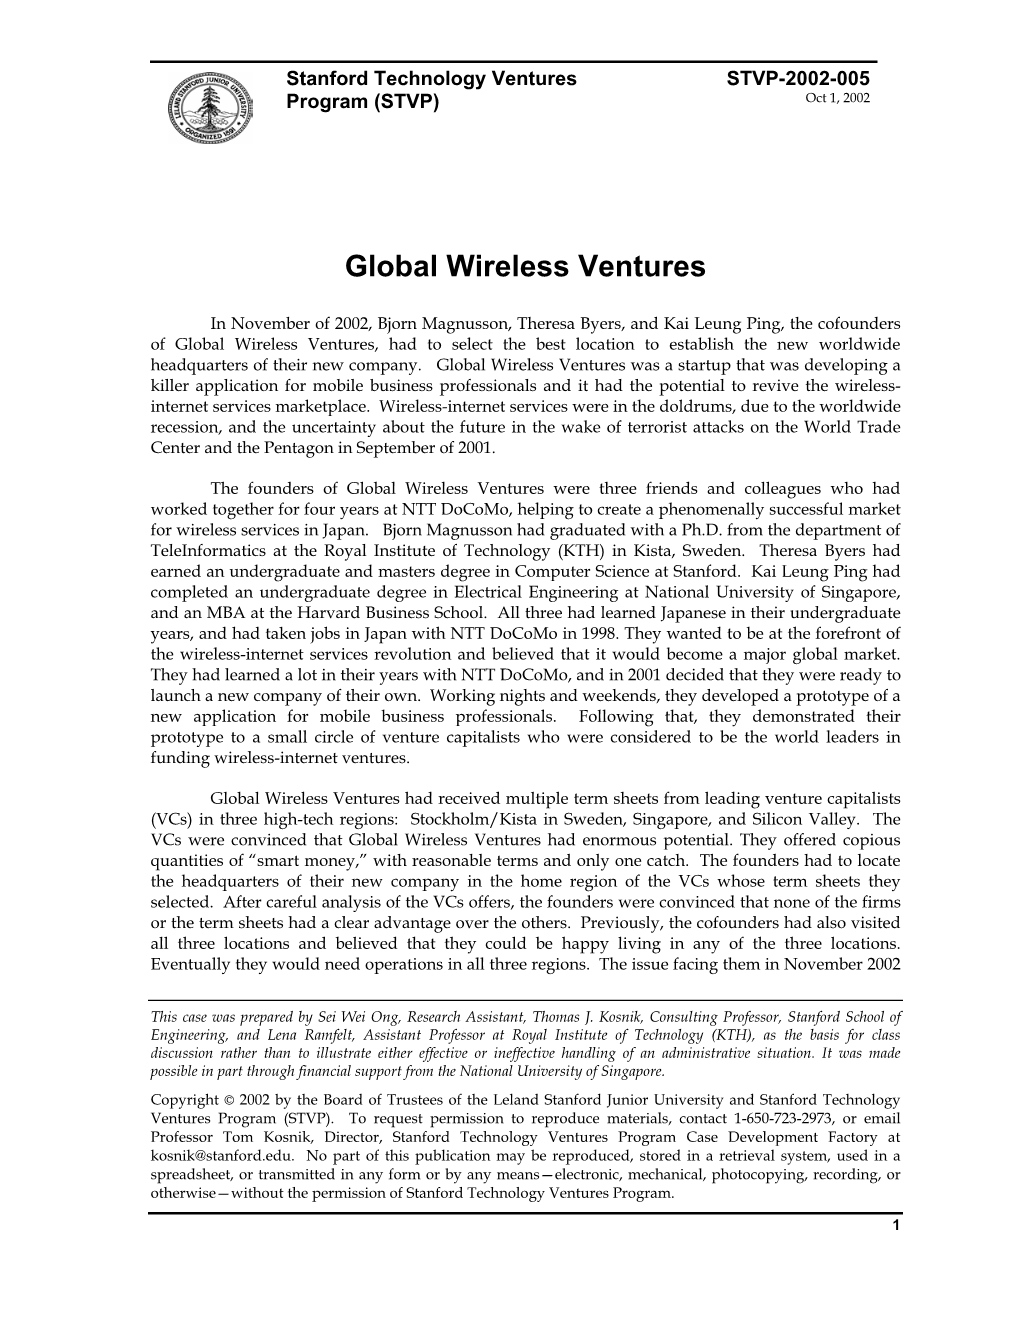 Global Wireless Ventures